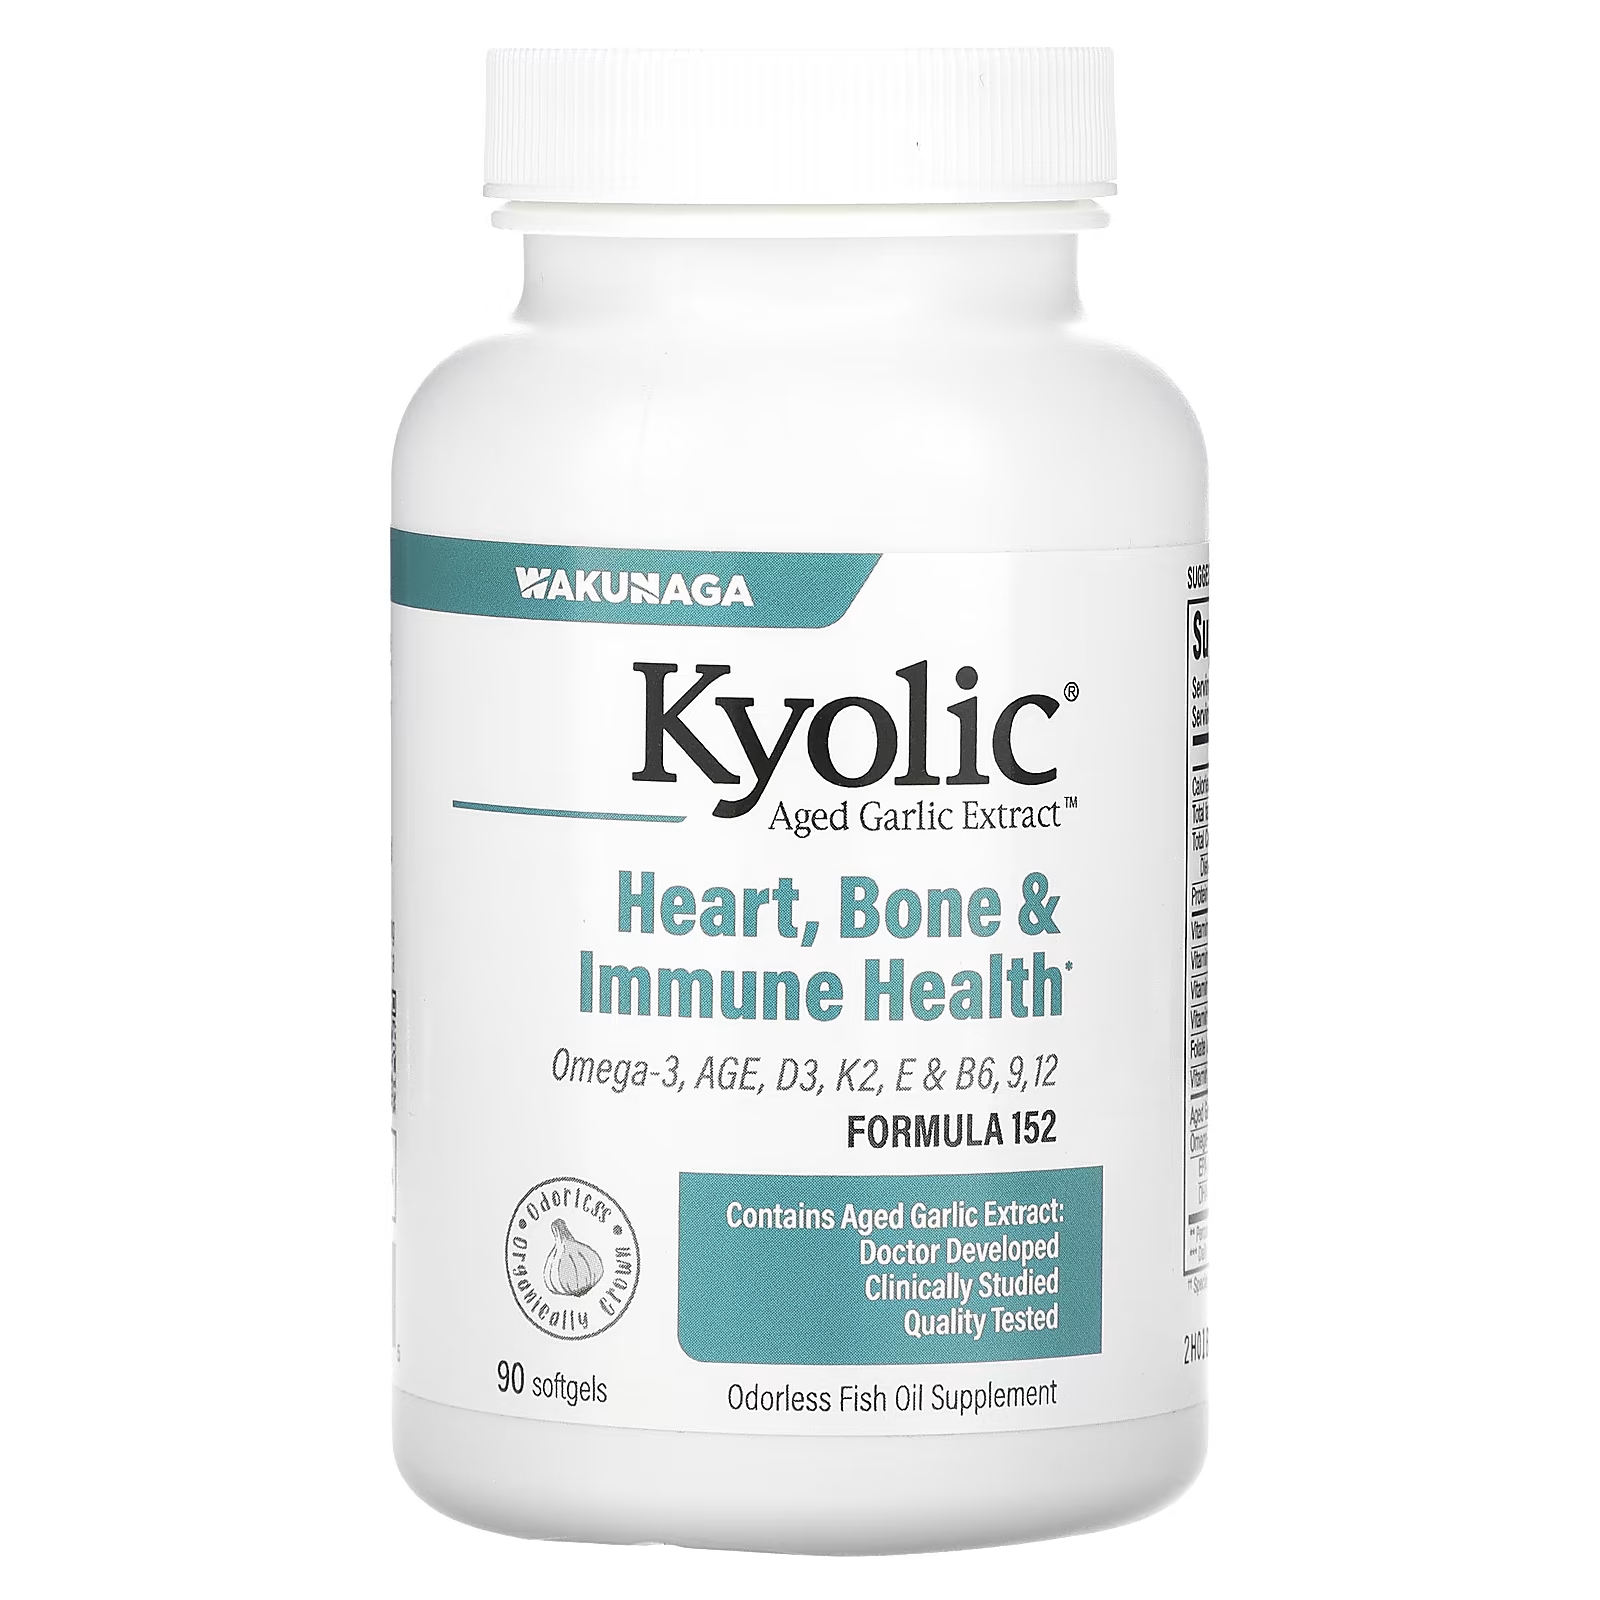 Здоровье костей и иммунитета Kyolic, 90 мягких таблеток kyolic aged garlic extract выдержанный экстракт чеснока снятие стресса и усталости формула 101 300 капсул